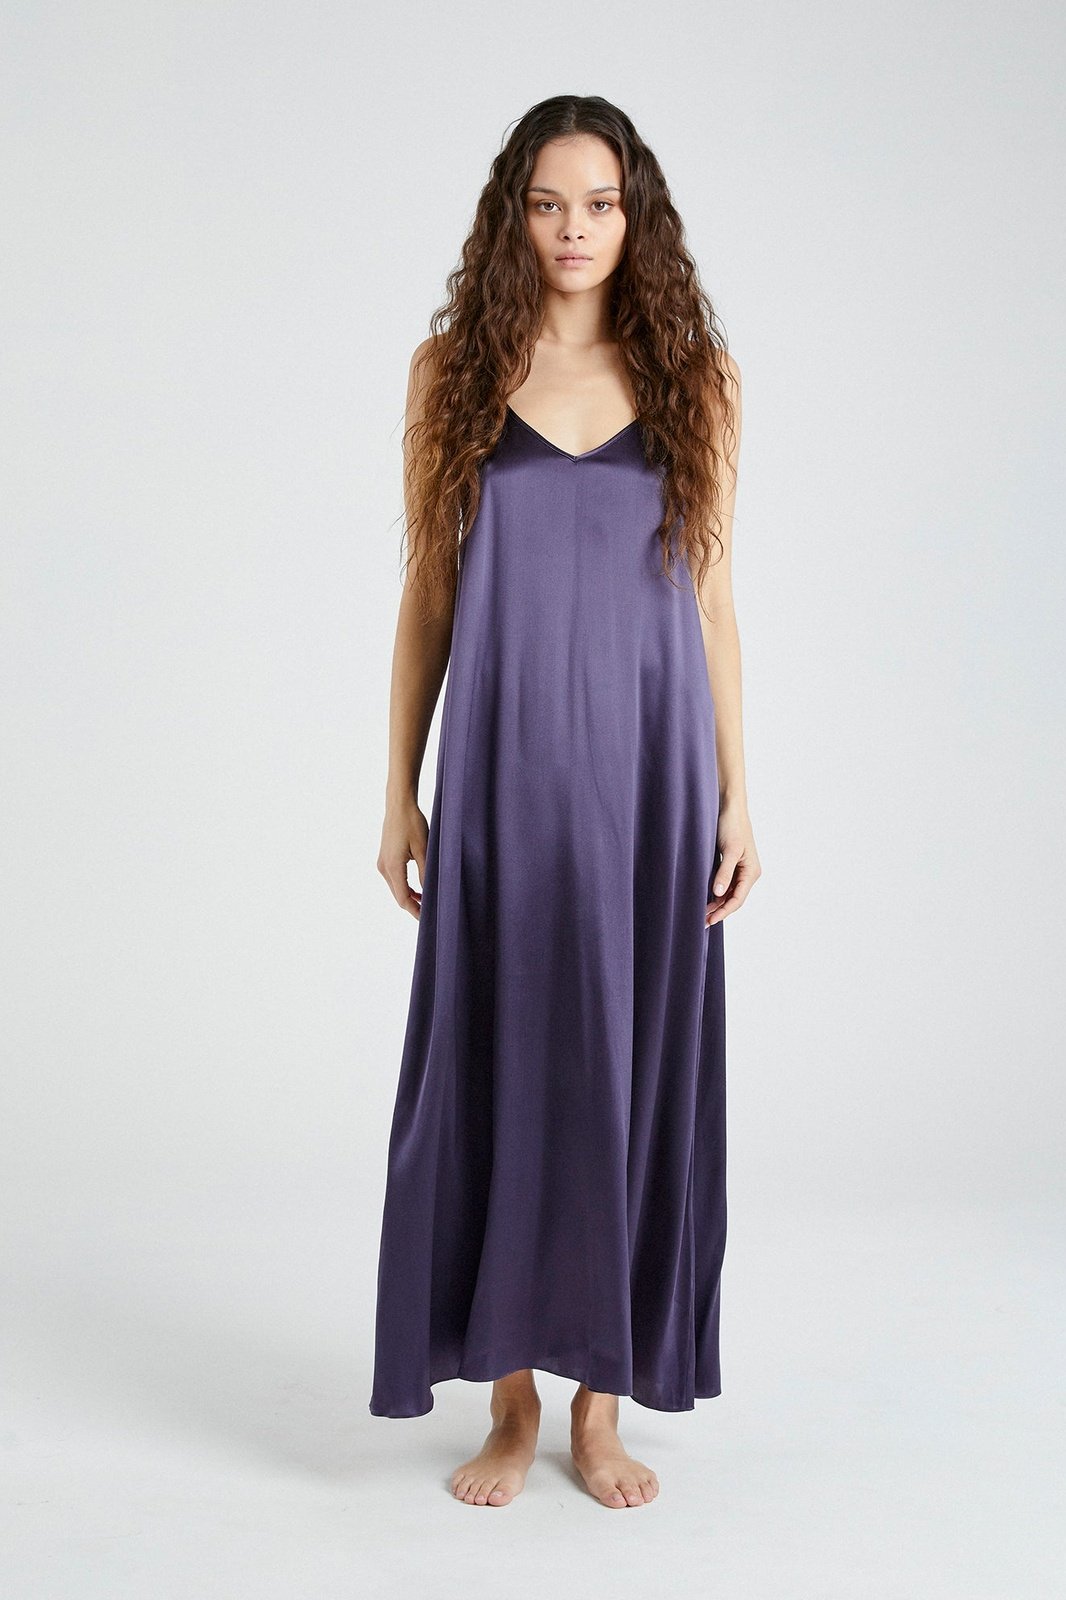 +Beryll Silk Maxi Dress Julie | Midnight Blue - +Beryll Silk Dress Julie | Midnight Blue - +Beryll Worn By Good People